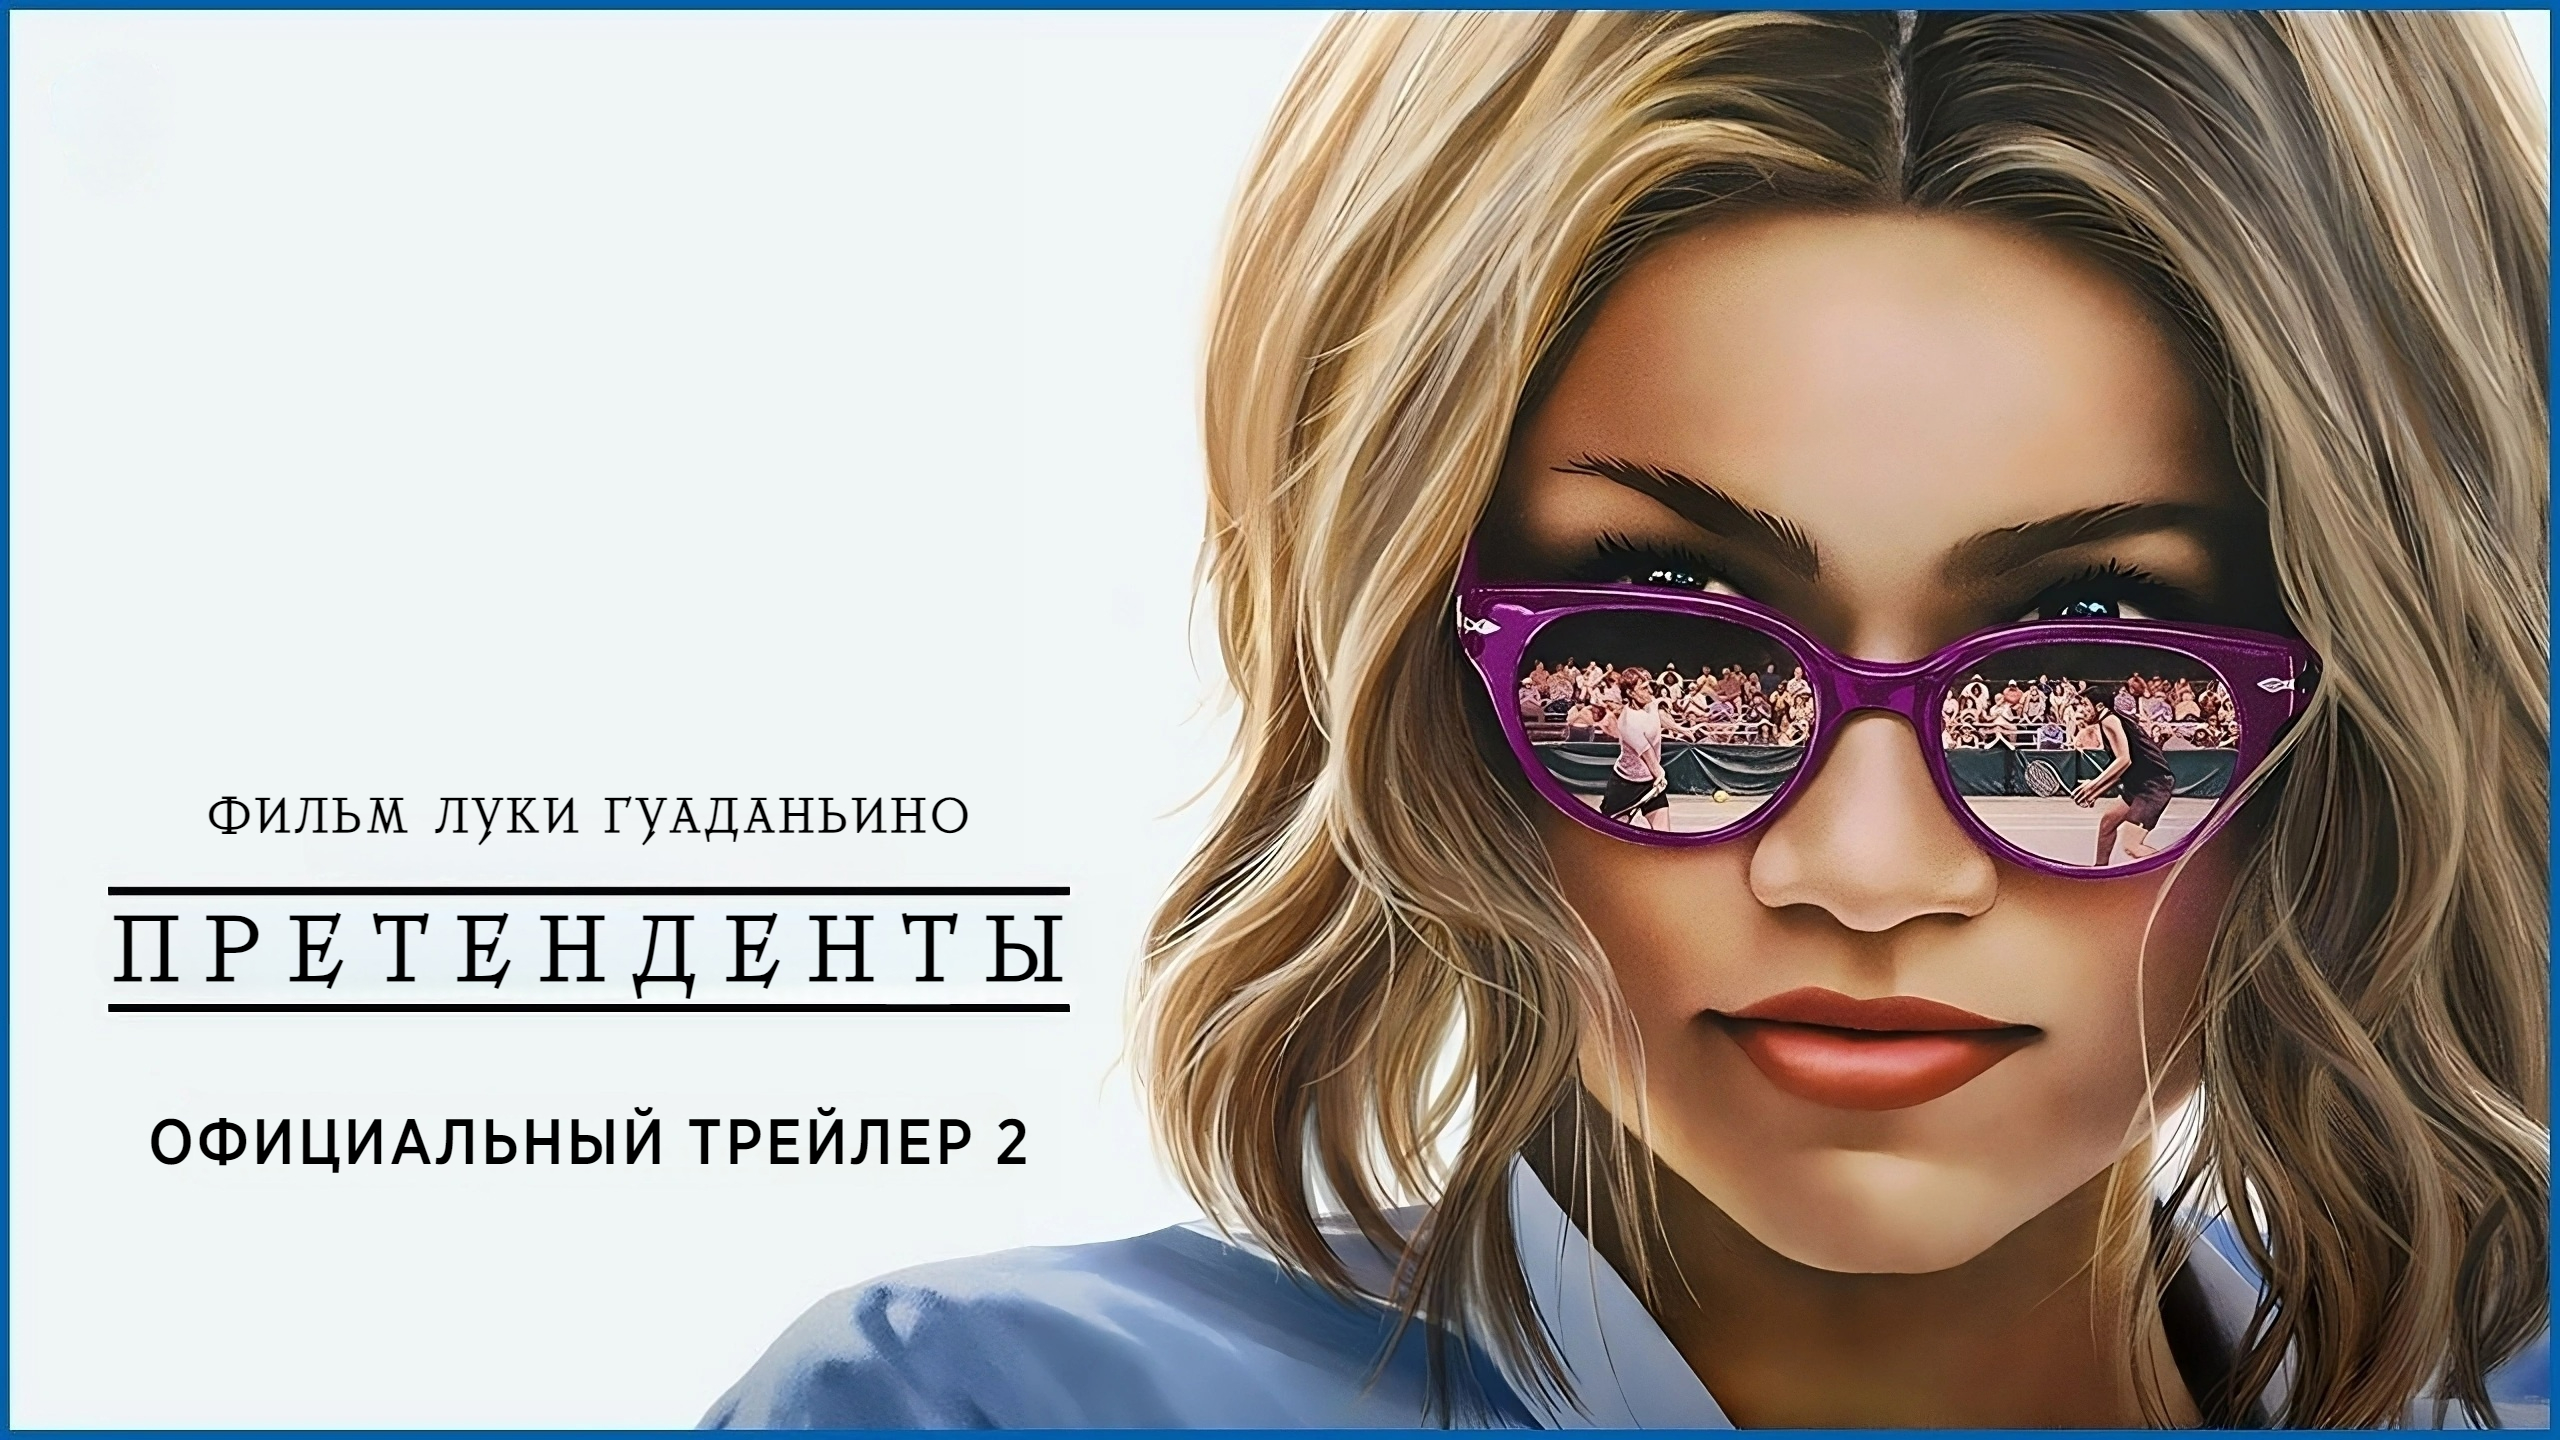 ПРЕТЕНДЕНТЫ | 24 апреля | Трейлер 2 | Русские субтитры | MGM | Warner Bros.